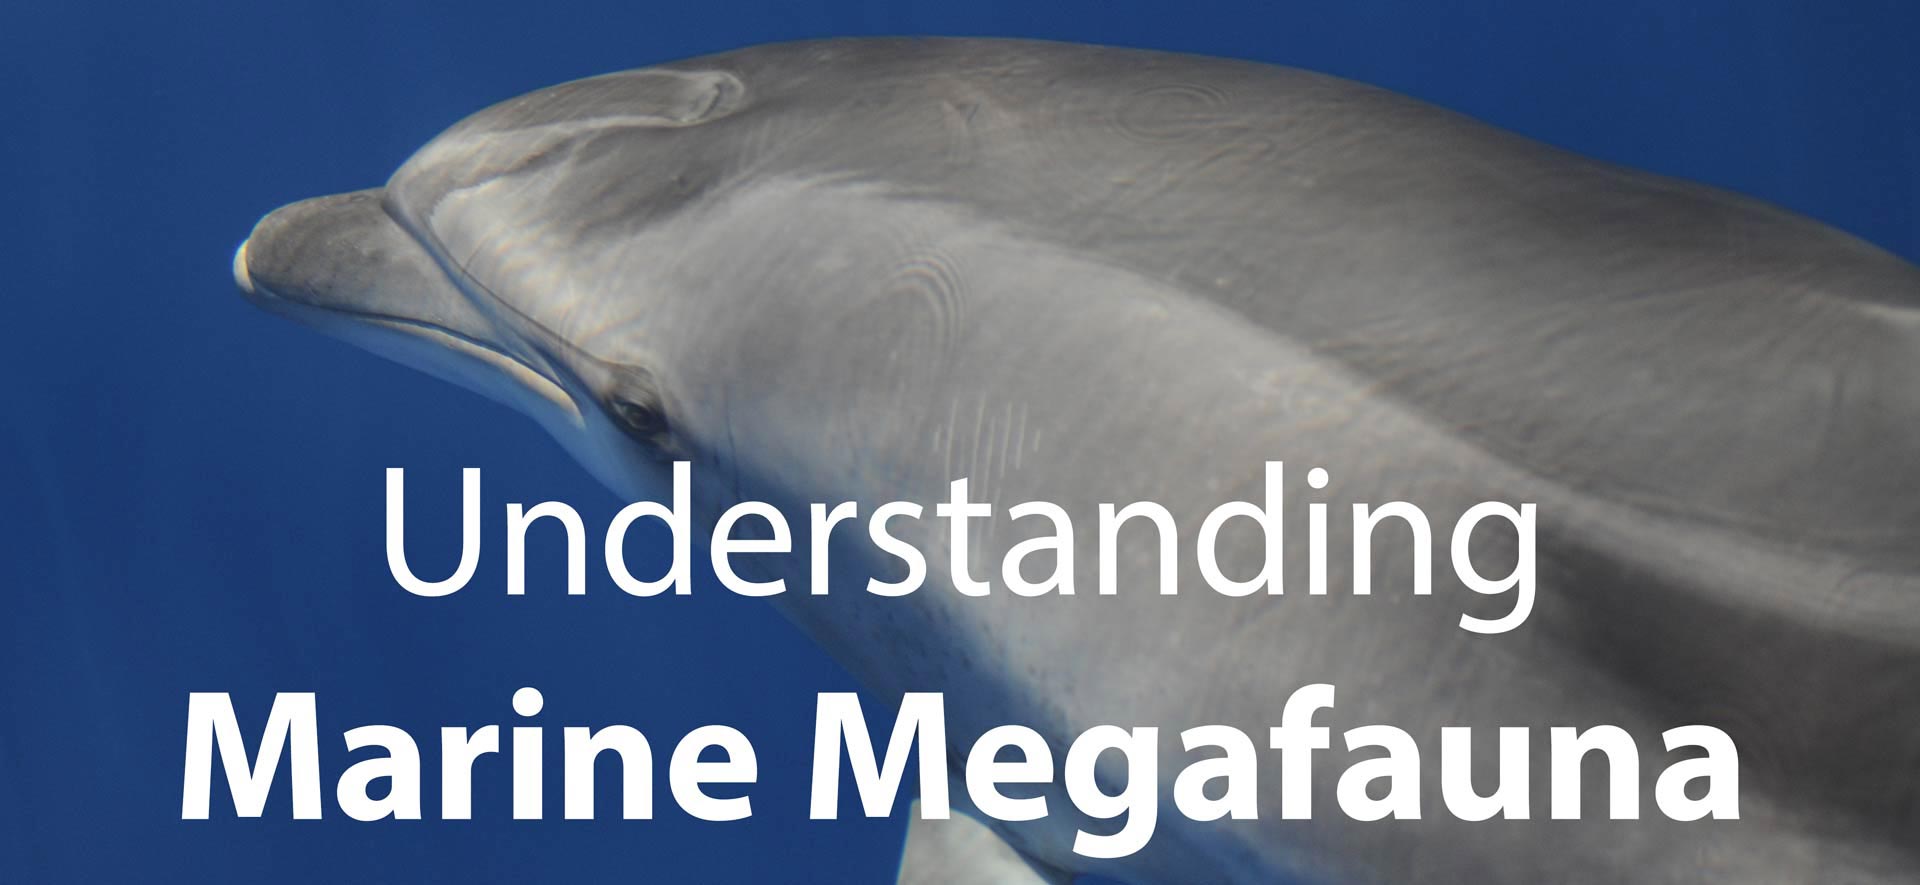 Investigación sobre delfines y ballenas